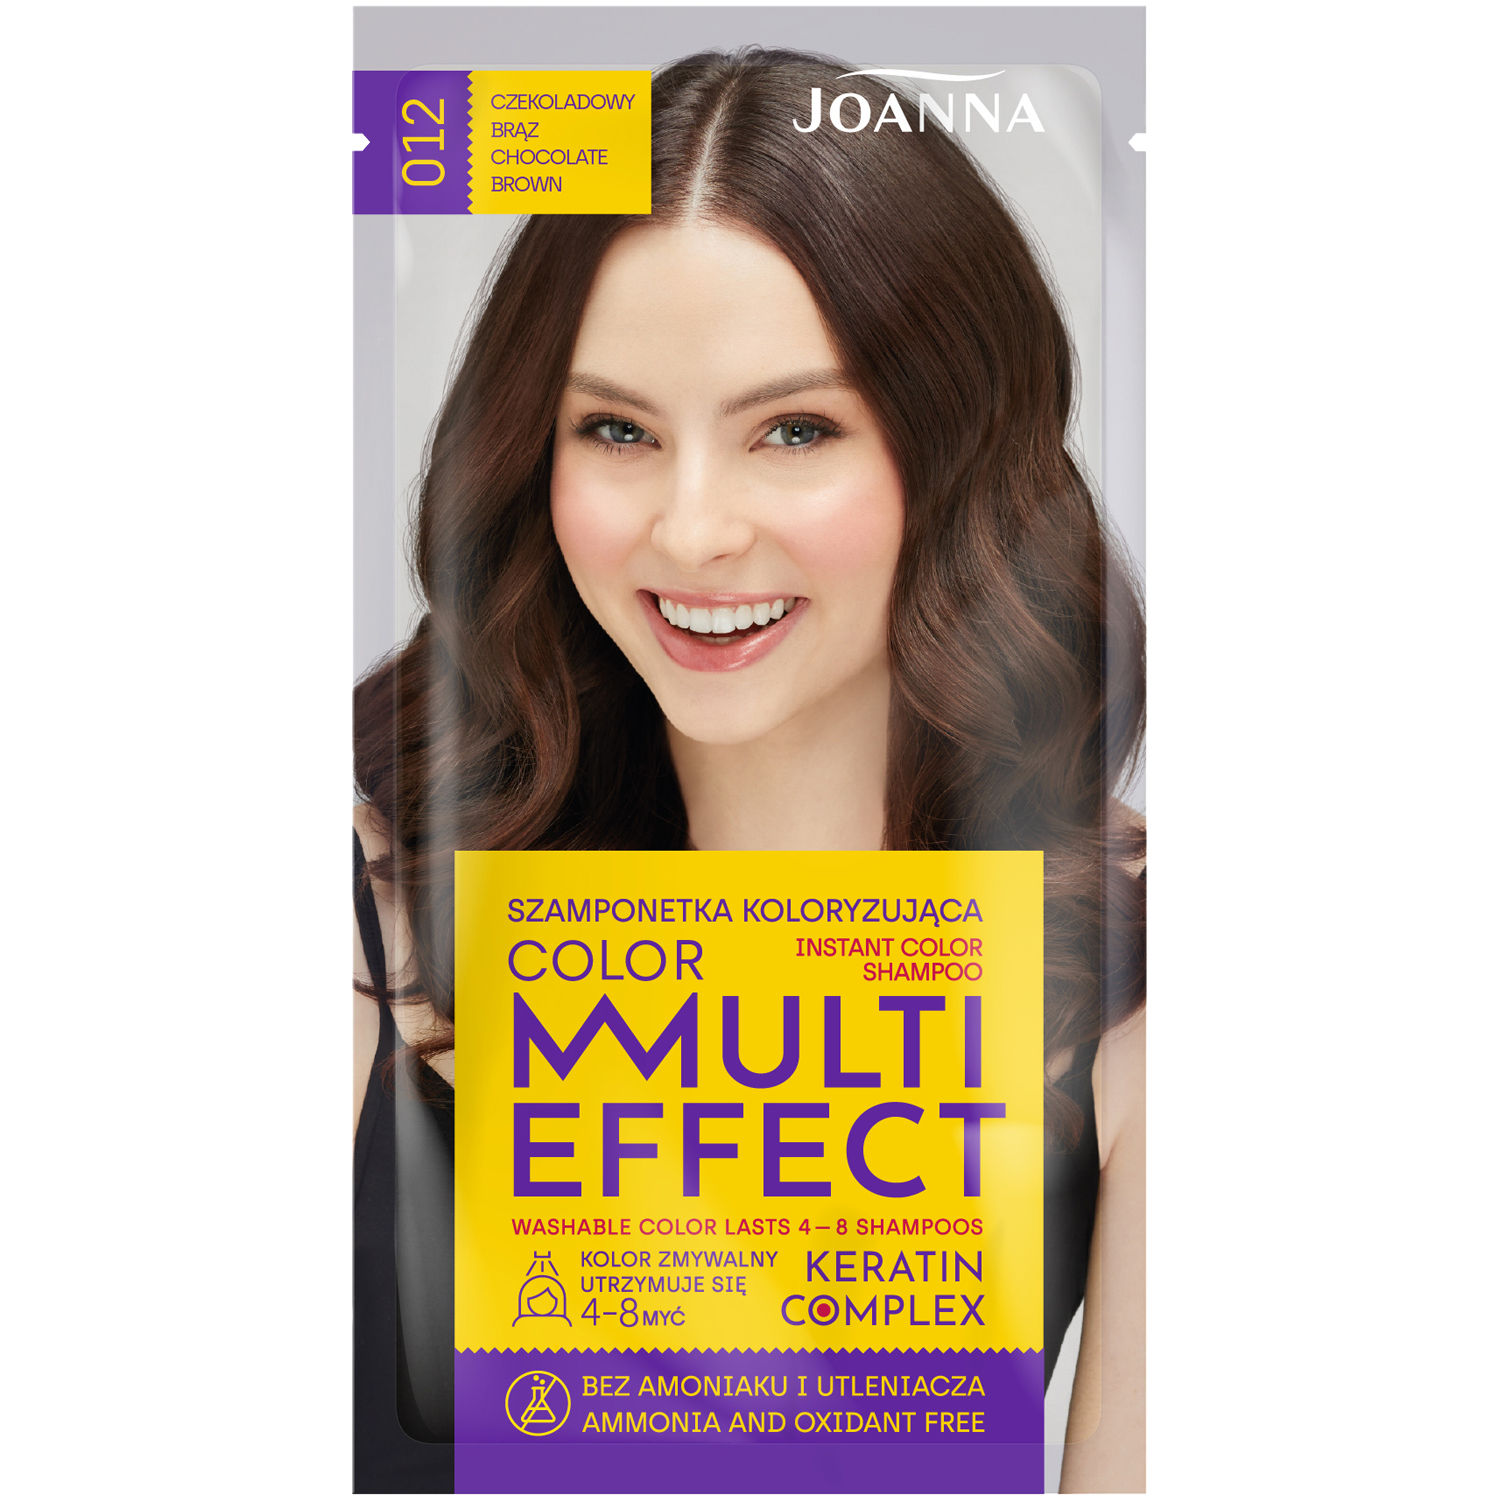 Joanna Multi Effect szamponetka koloryzująca 012 czekoladowy brąz, 35 g |  hebe.pl